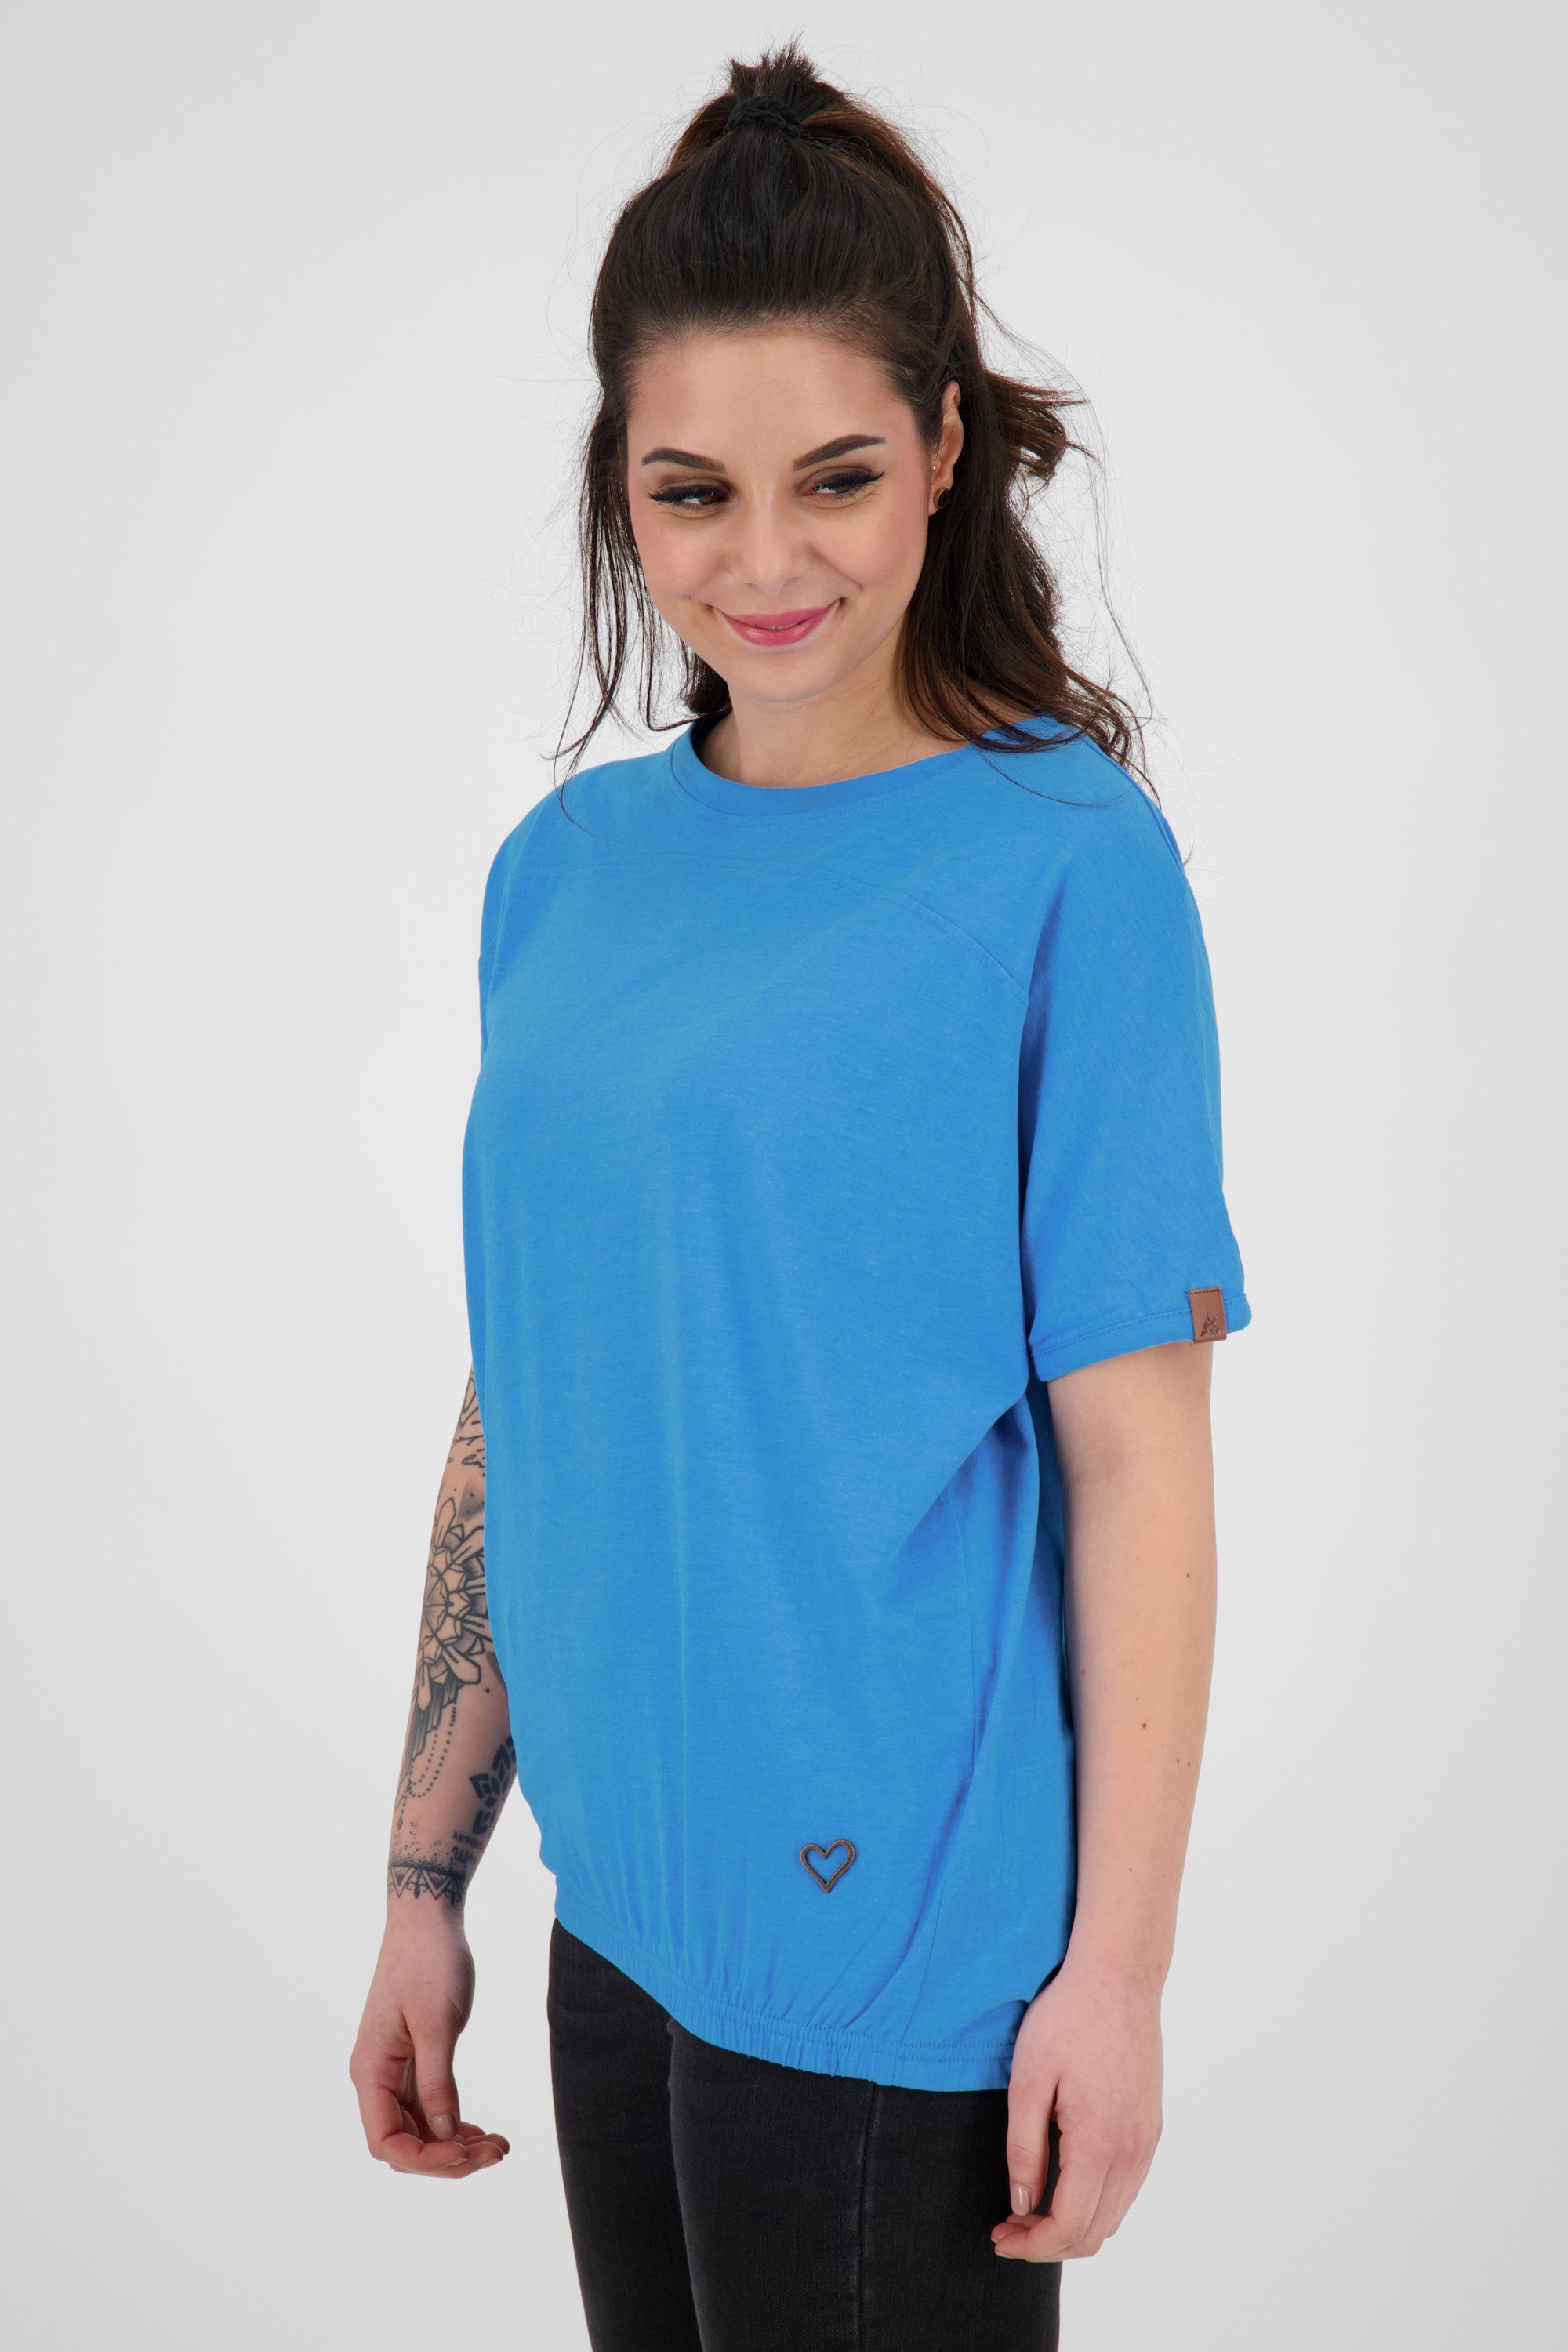 & T-Shirt Kickin Alife Damen DiniAK cobalt T-Shirt